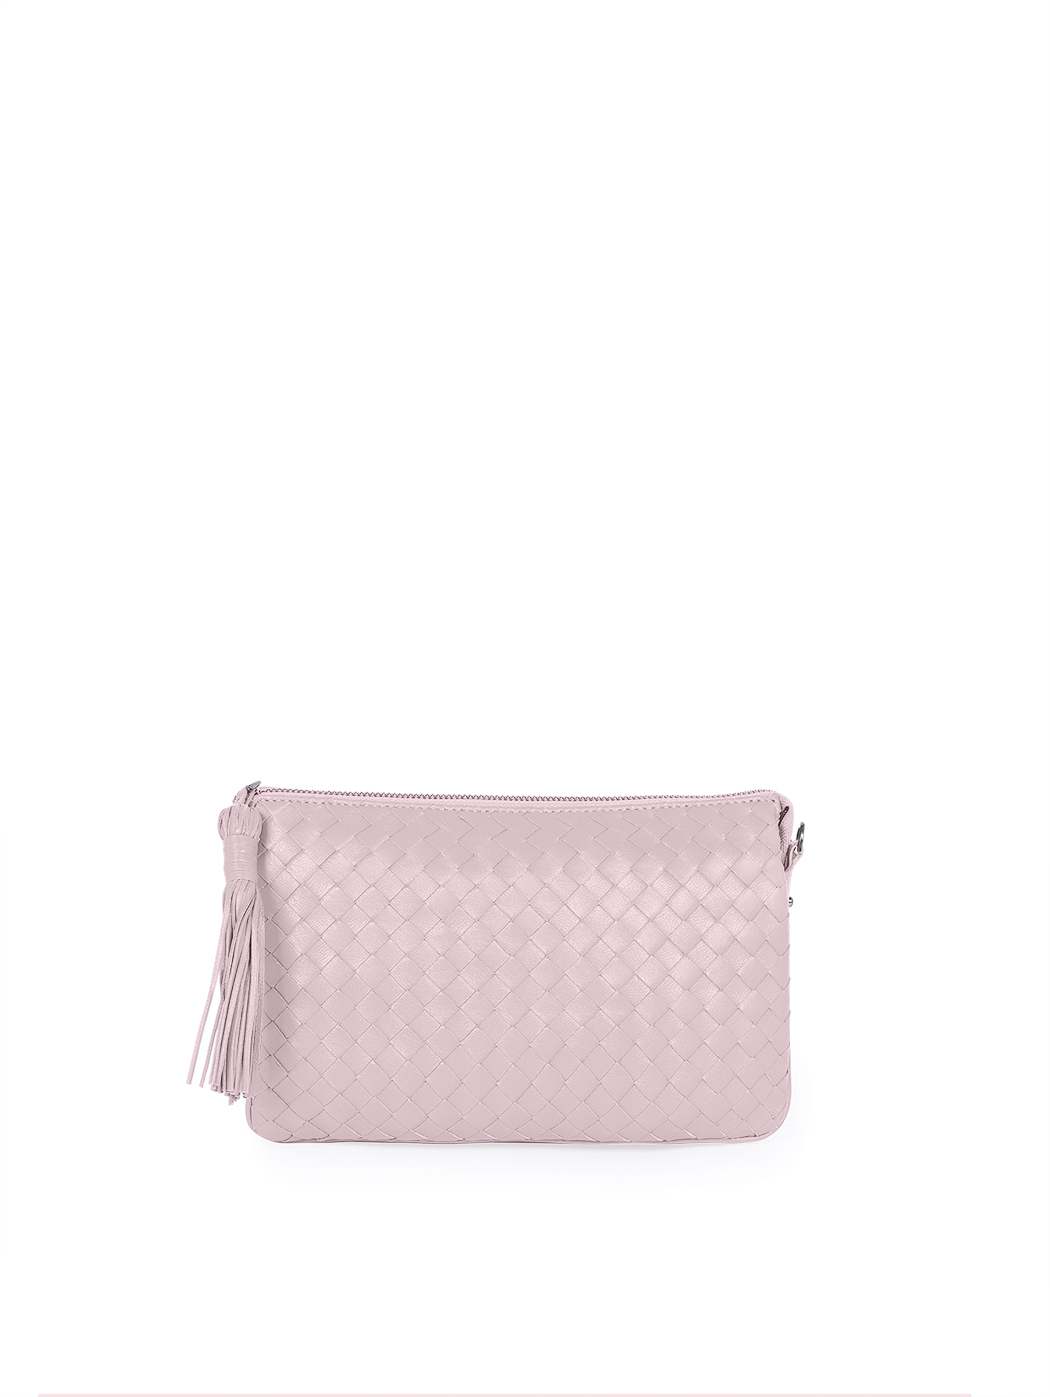 Плетеная сумка – клатч со съемным ремнем коллекции Intrecci розового цвета